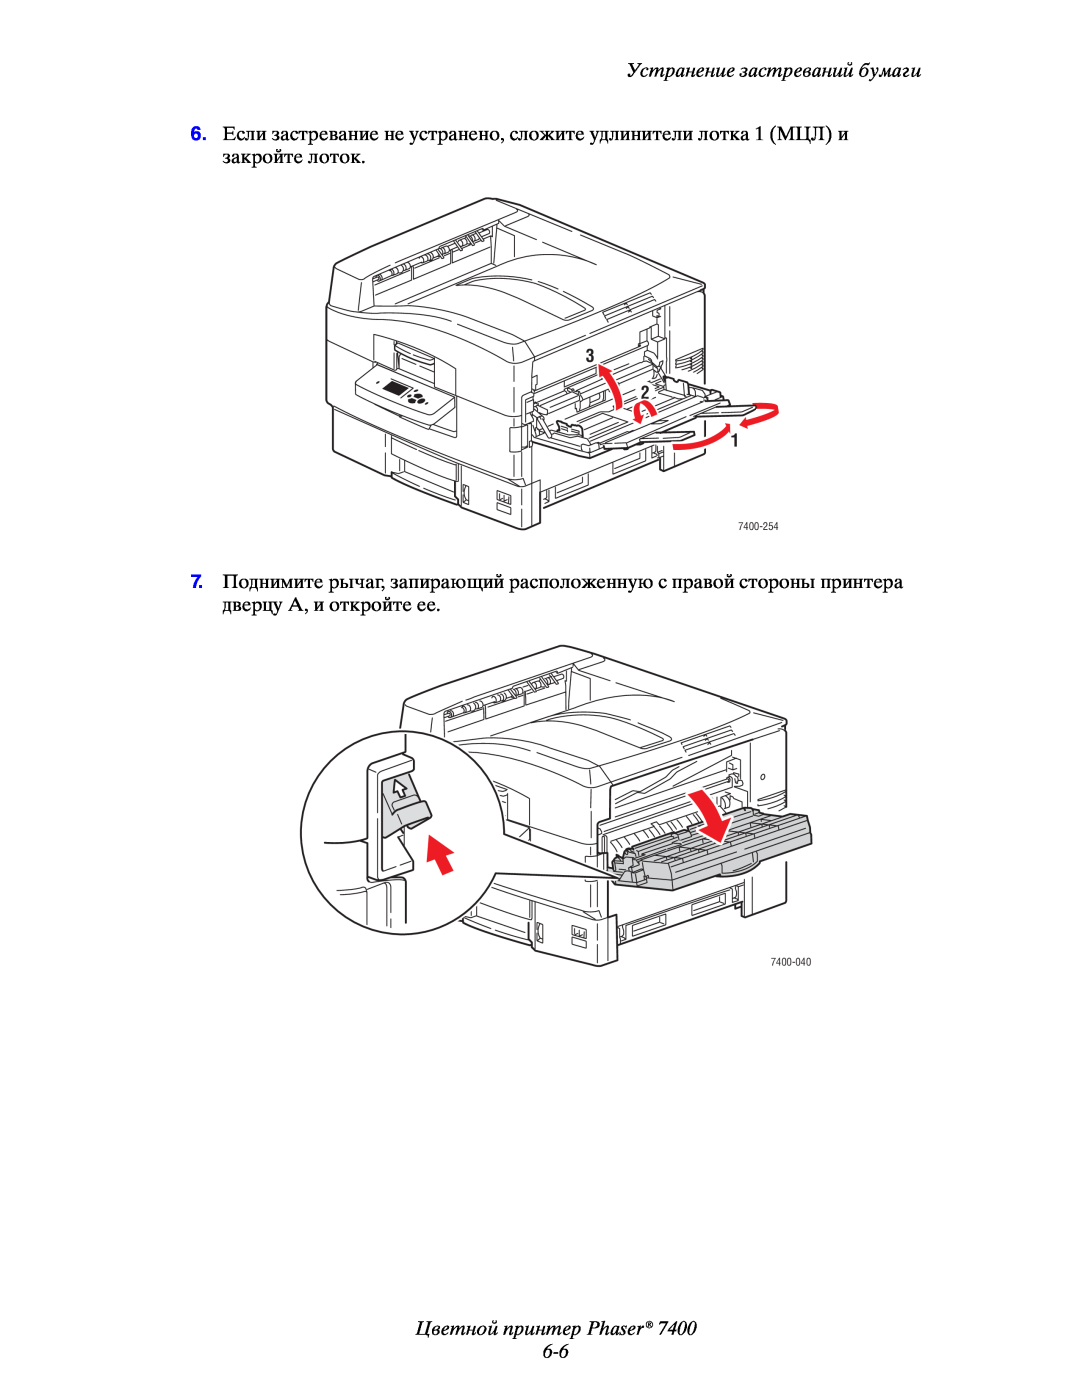 Xerox 7400 manual Цветной принтер Phaser 6-6, Устранение застреваний бумаги 